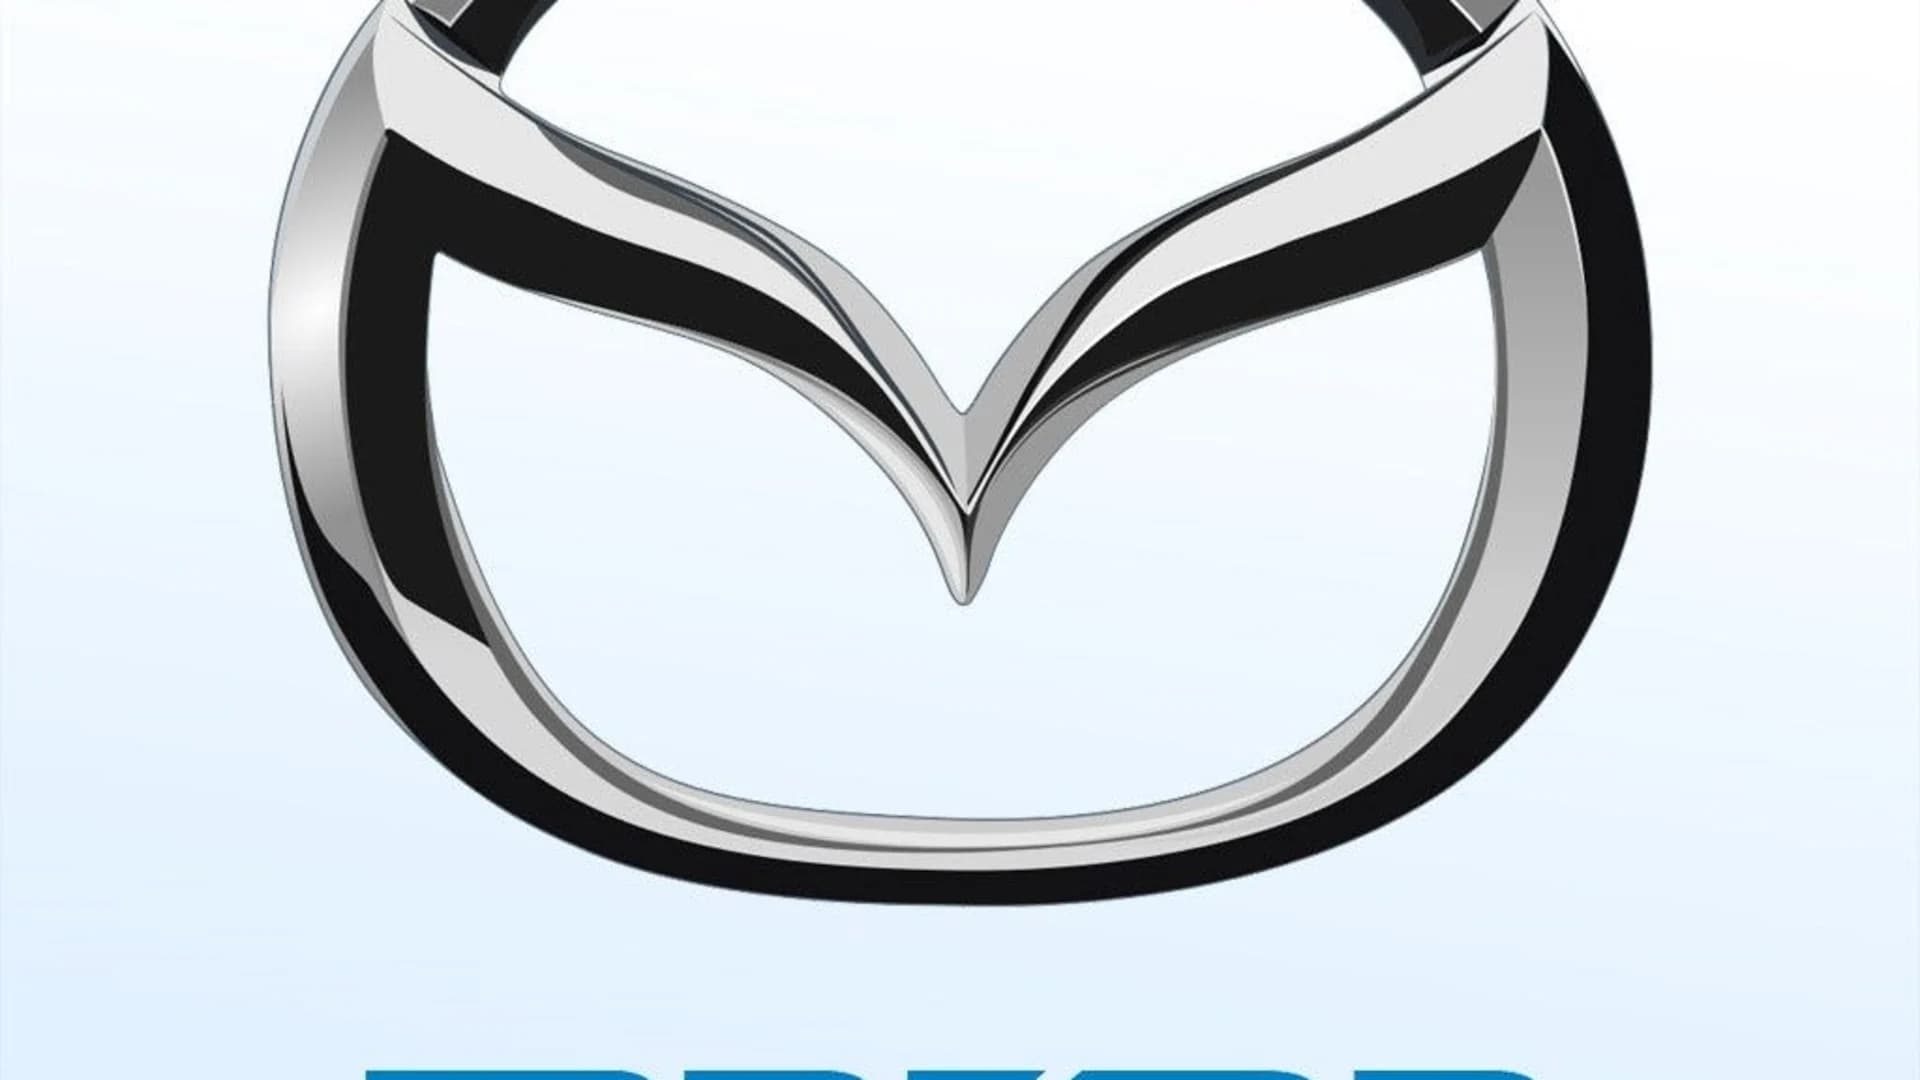 Mazda recalls 270,000 vehicles over Takata airbags